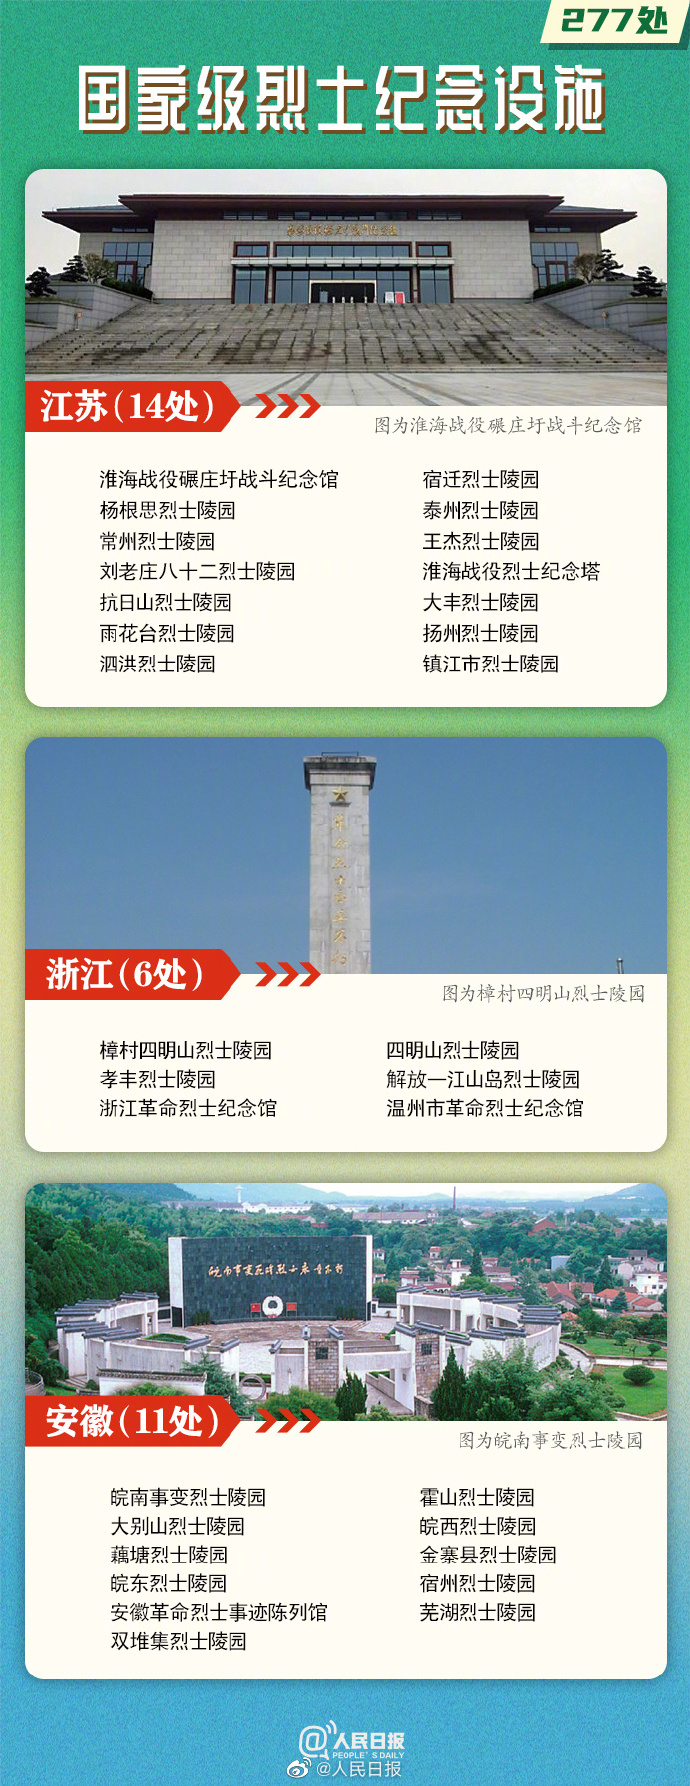 277处国家级烈士纪念设施名单公布，云南9处3.jpg